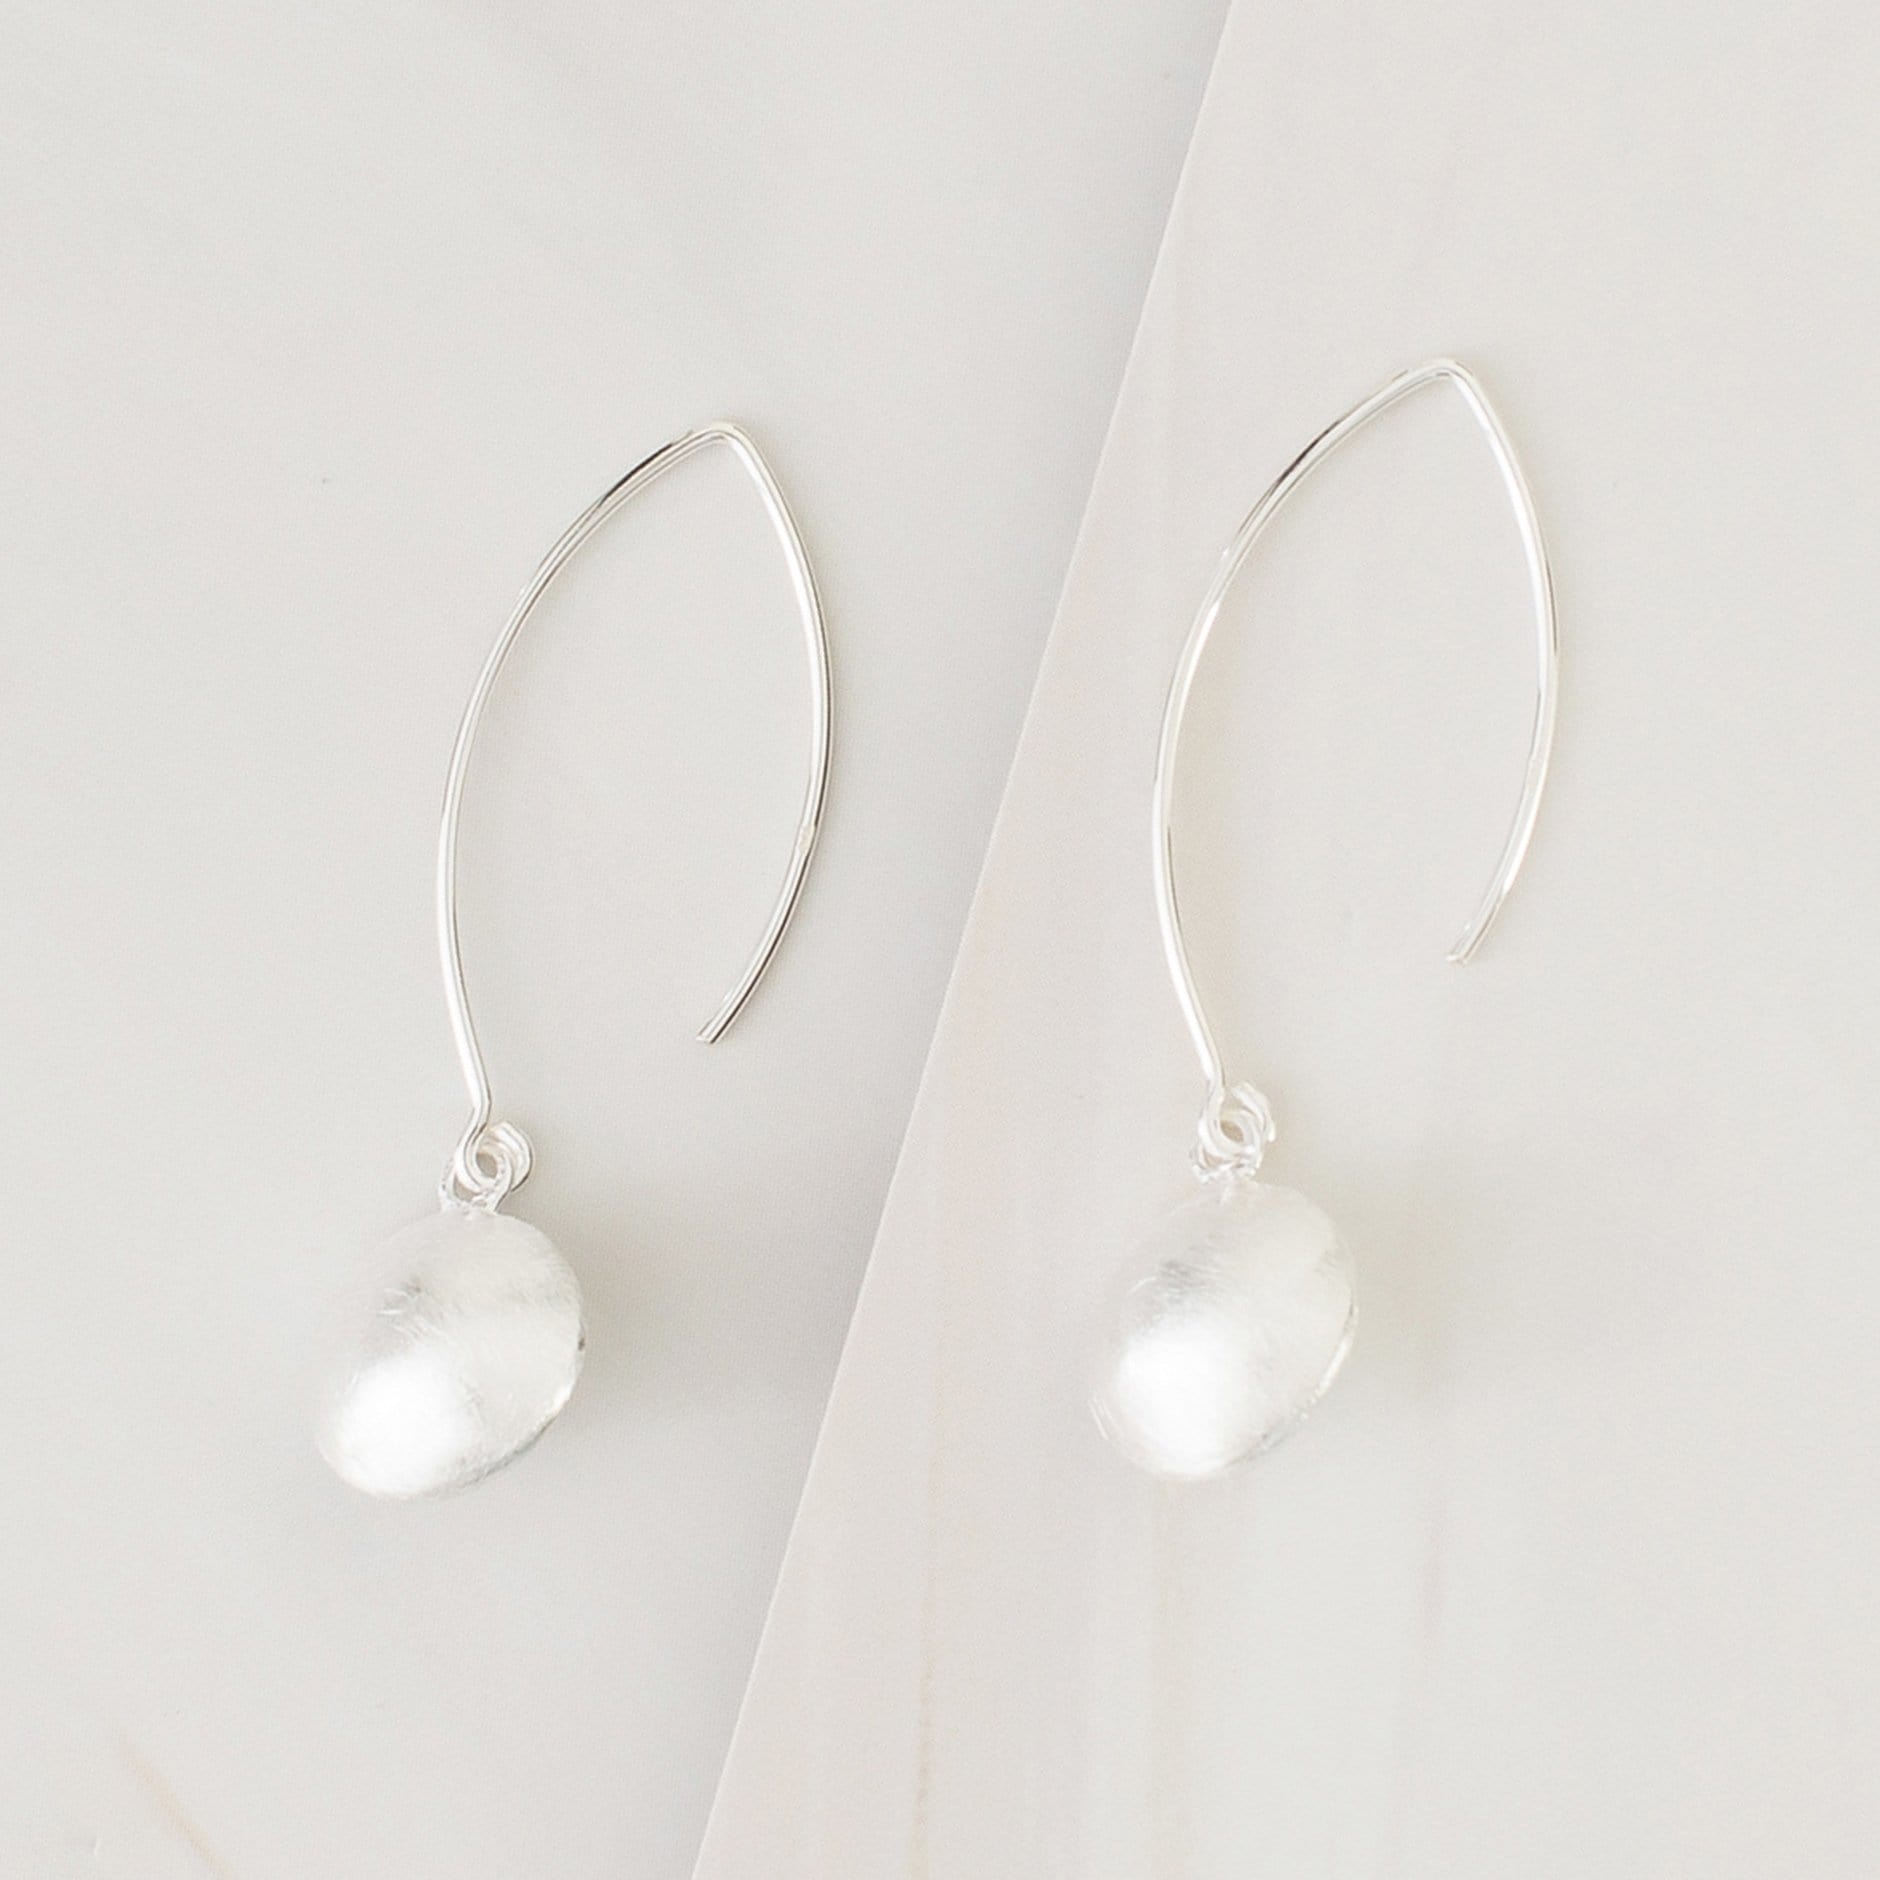 Emblem Jewelry Earrings Silver Tone Cymbal Drop Hook Earrings